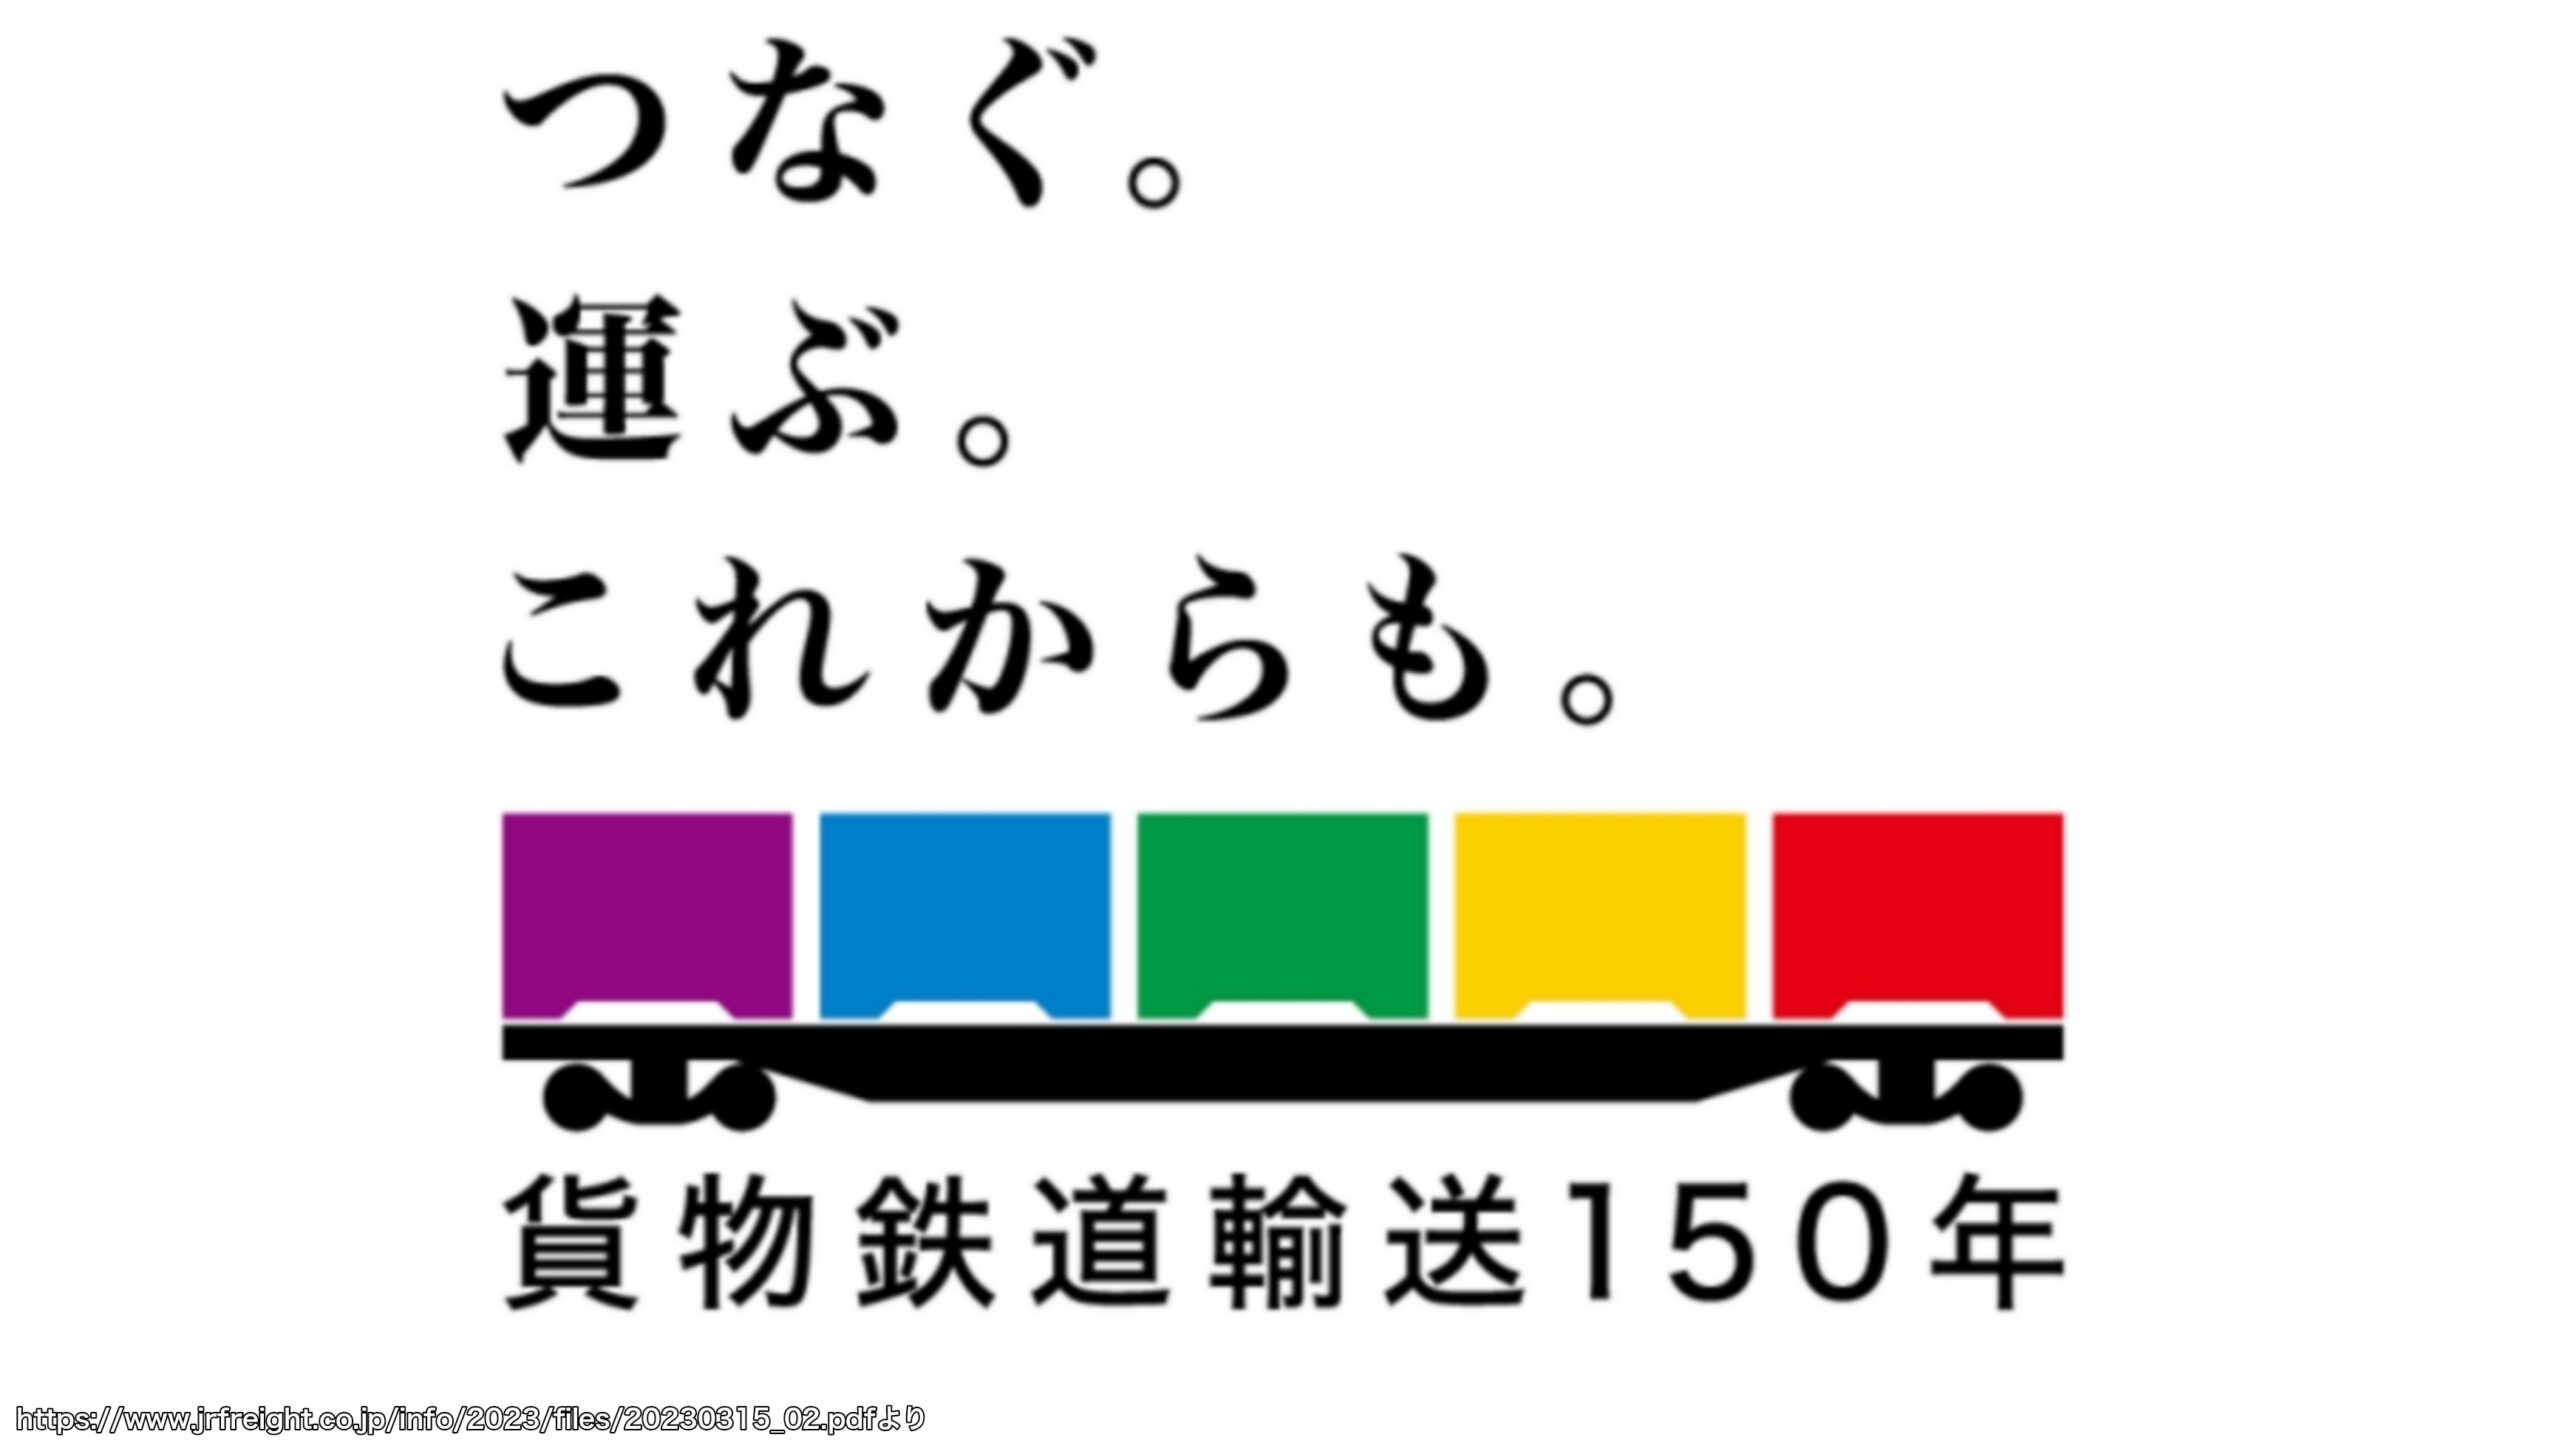 【貨物鉄道輸送150年】記念ロゴマーク・キャッチコピー制定　JR貨物